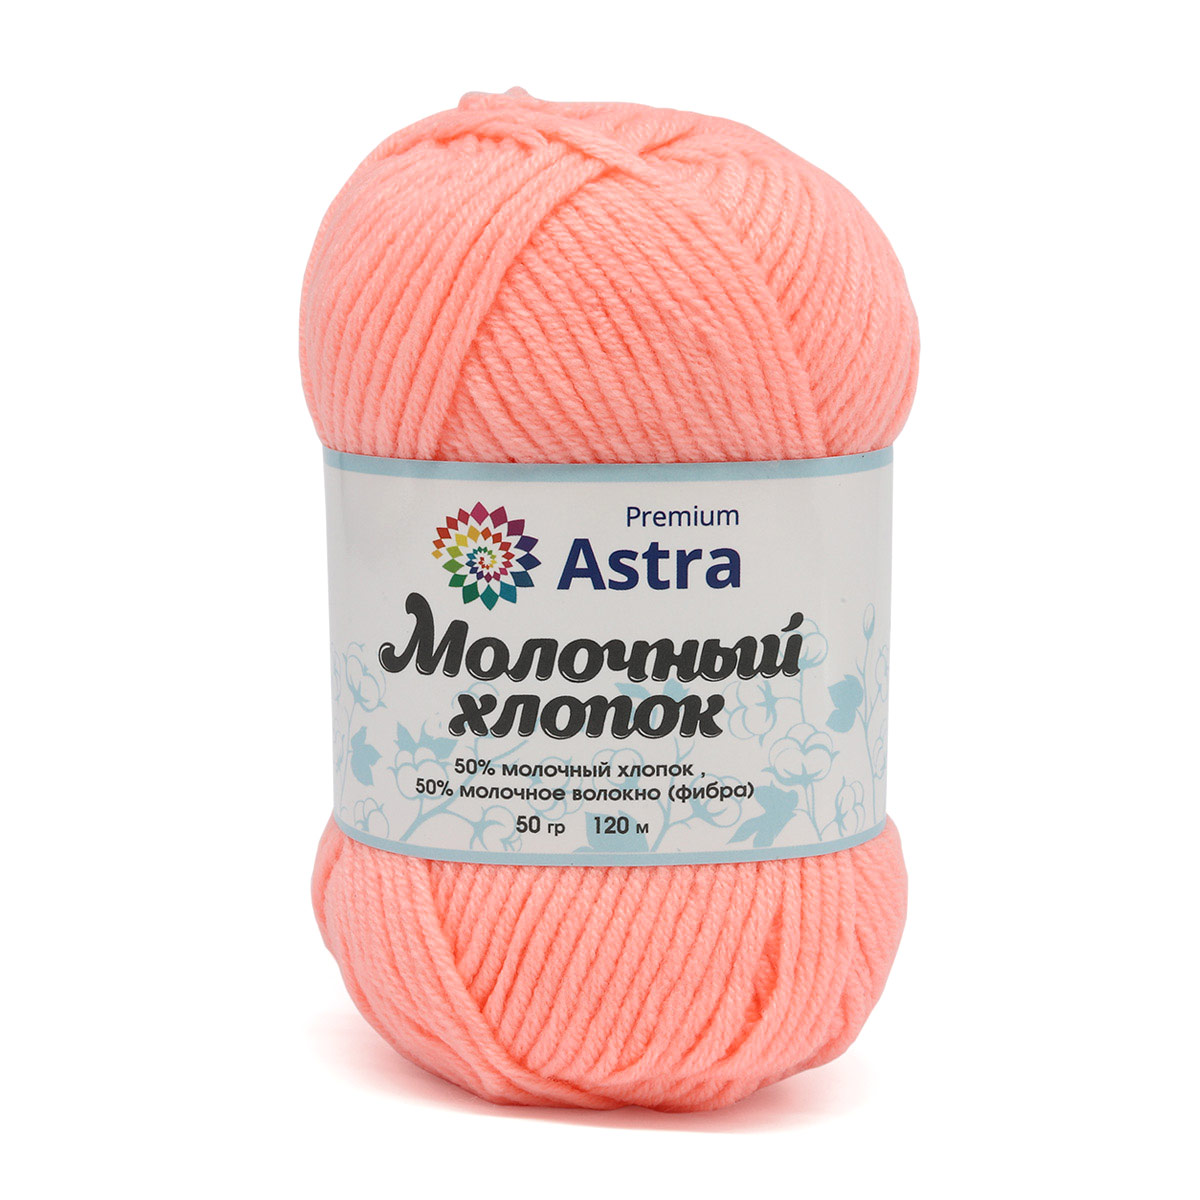 Astra Premium Молочный хлопок 03 светло-коралловый